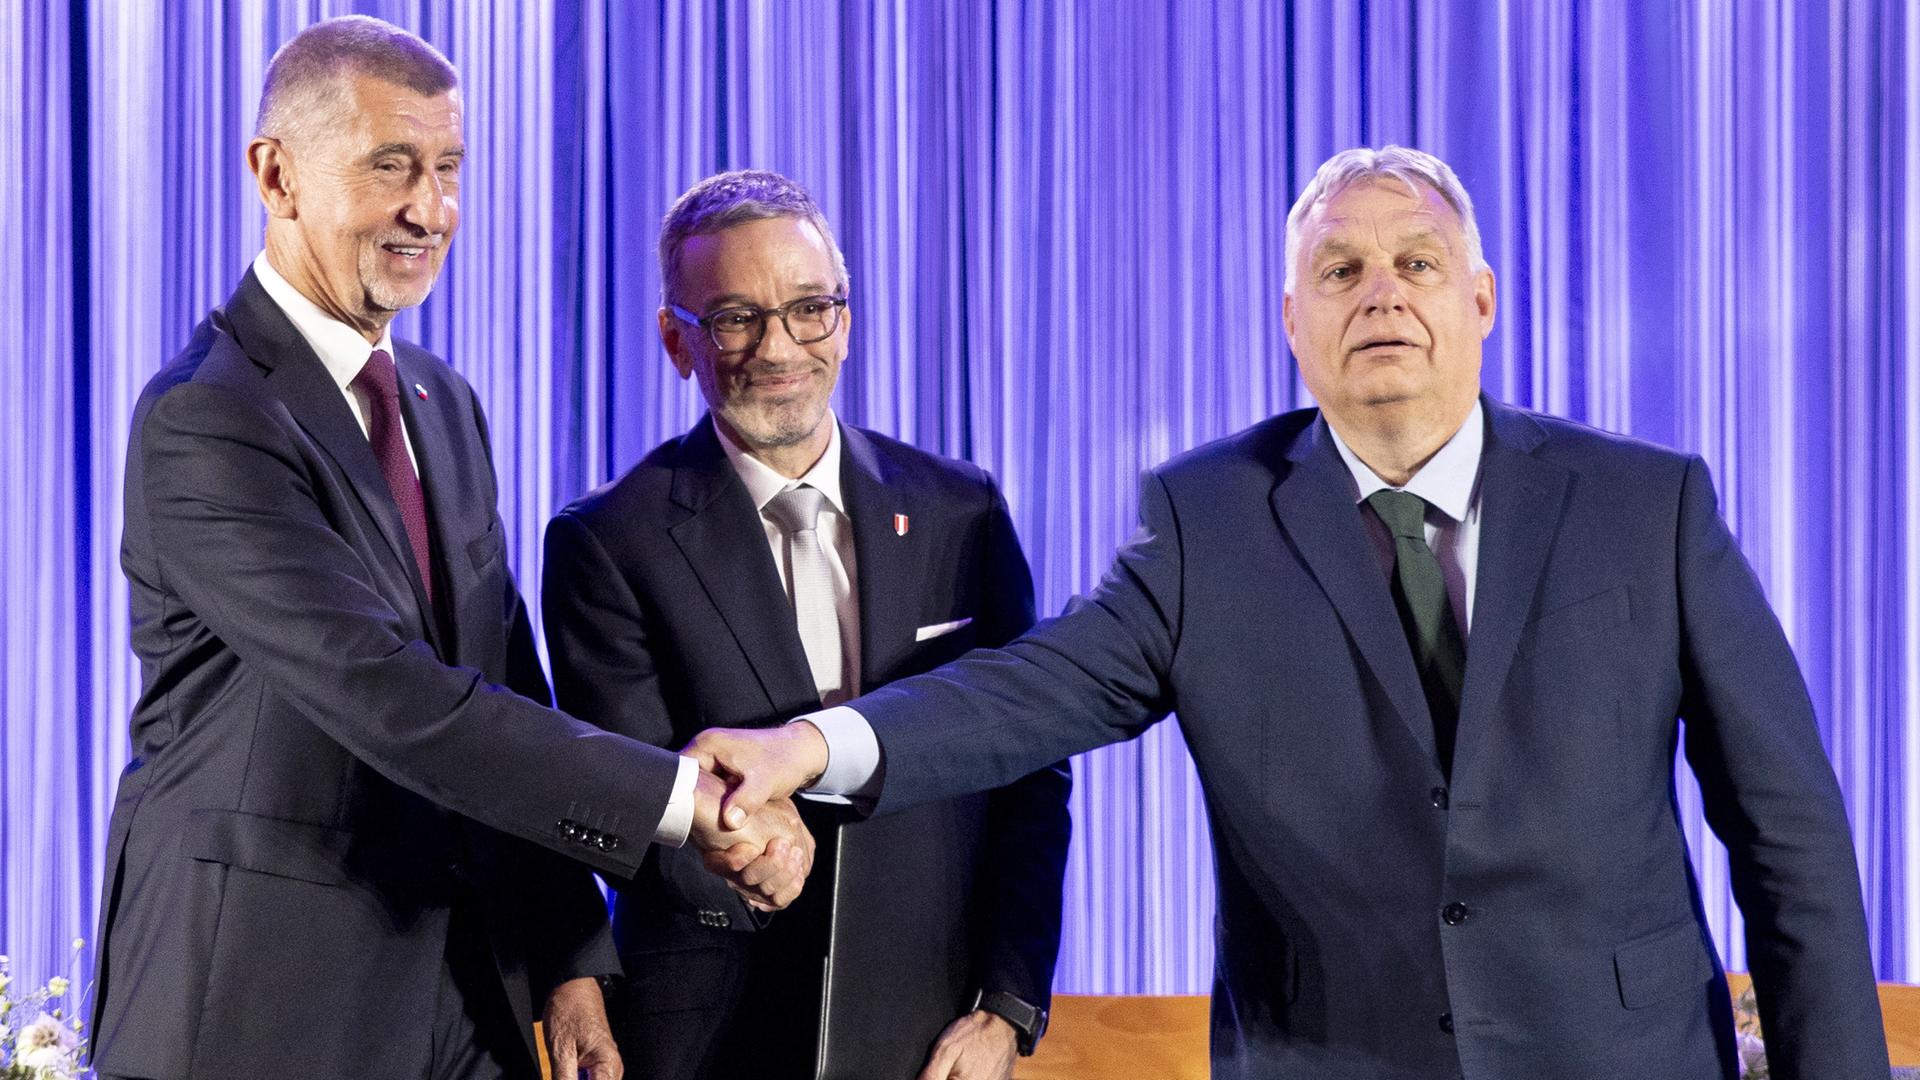 Andrej Babis, Vorsitzender der tschechischen liberal-populistischen ANO, Herbert Kickl, Chef der rechten österreichischen FPÖ, und Viktor Orban, Ministerpräsident von Ungarn und Vorsitzender der Partei Fidesz, reichen sie die Hände.